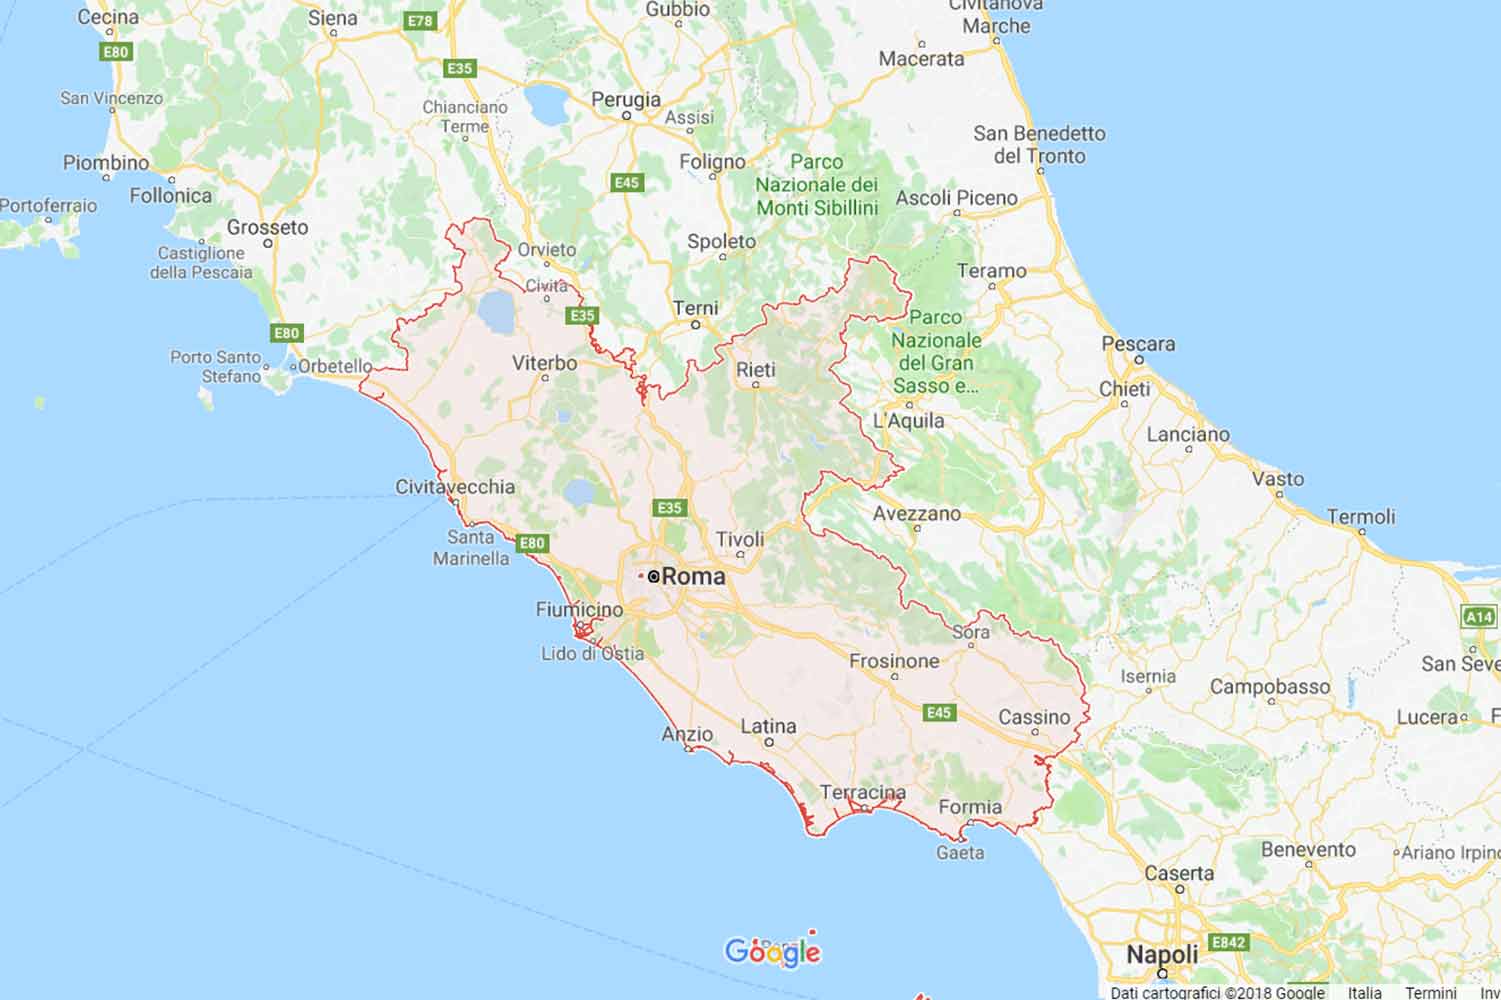 Lazio - Viterbo - Monterosi Preventivi Veloci google maps